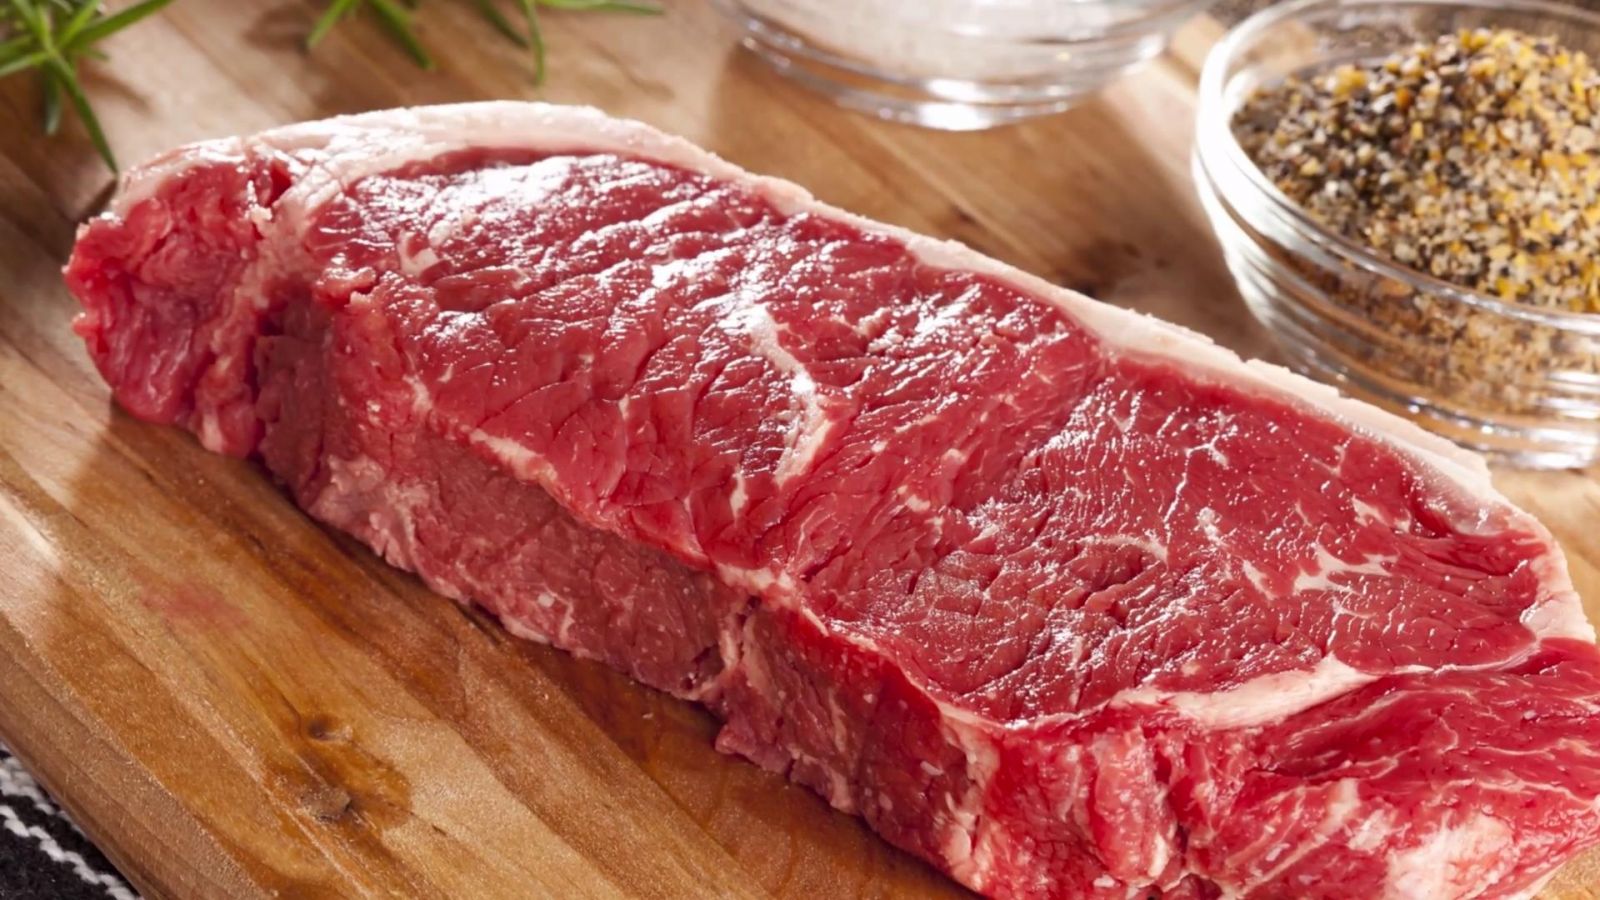 thịt bò có thể khiến vết thương lâu lành, ngoài ra dễ làm các nốt mun dễ bị thâm đen hơn